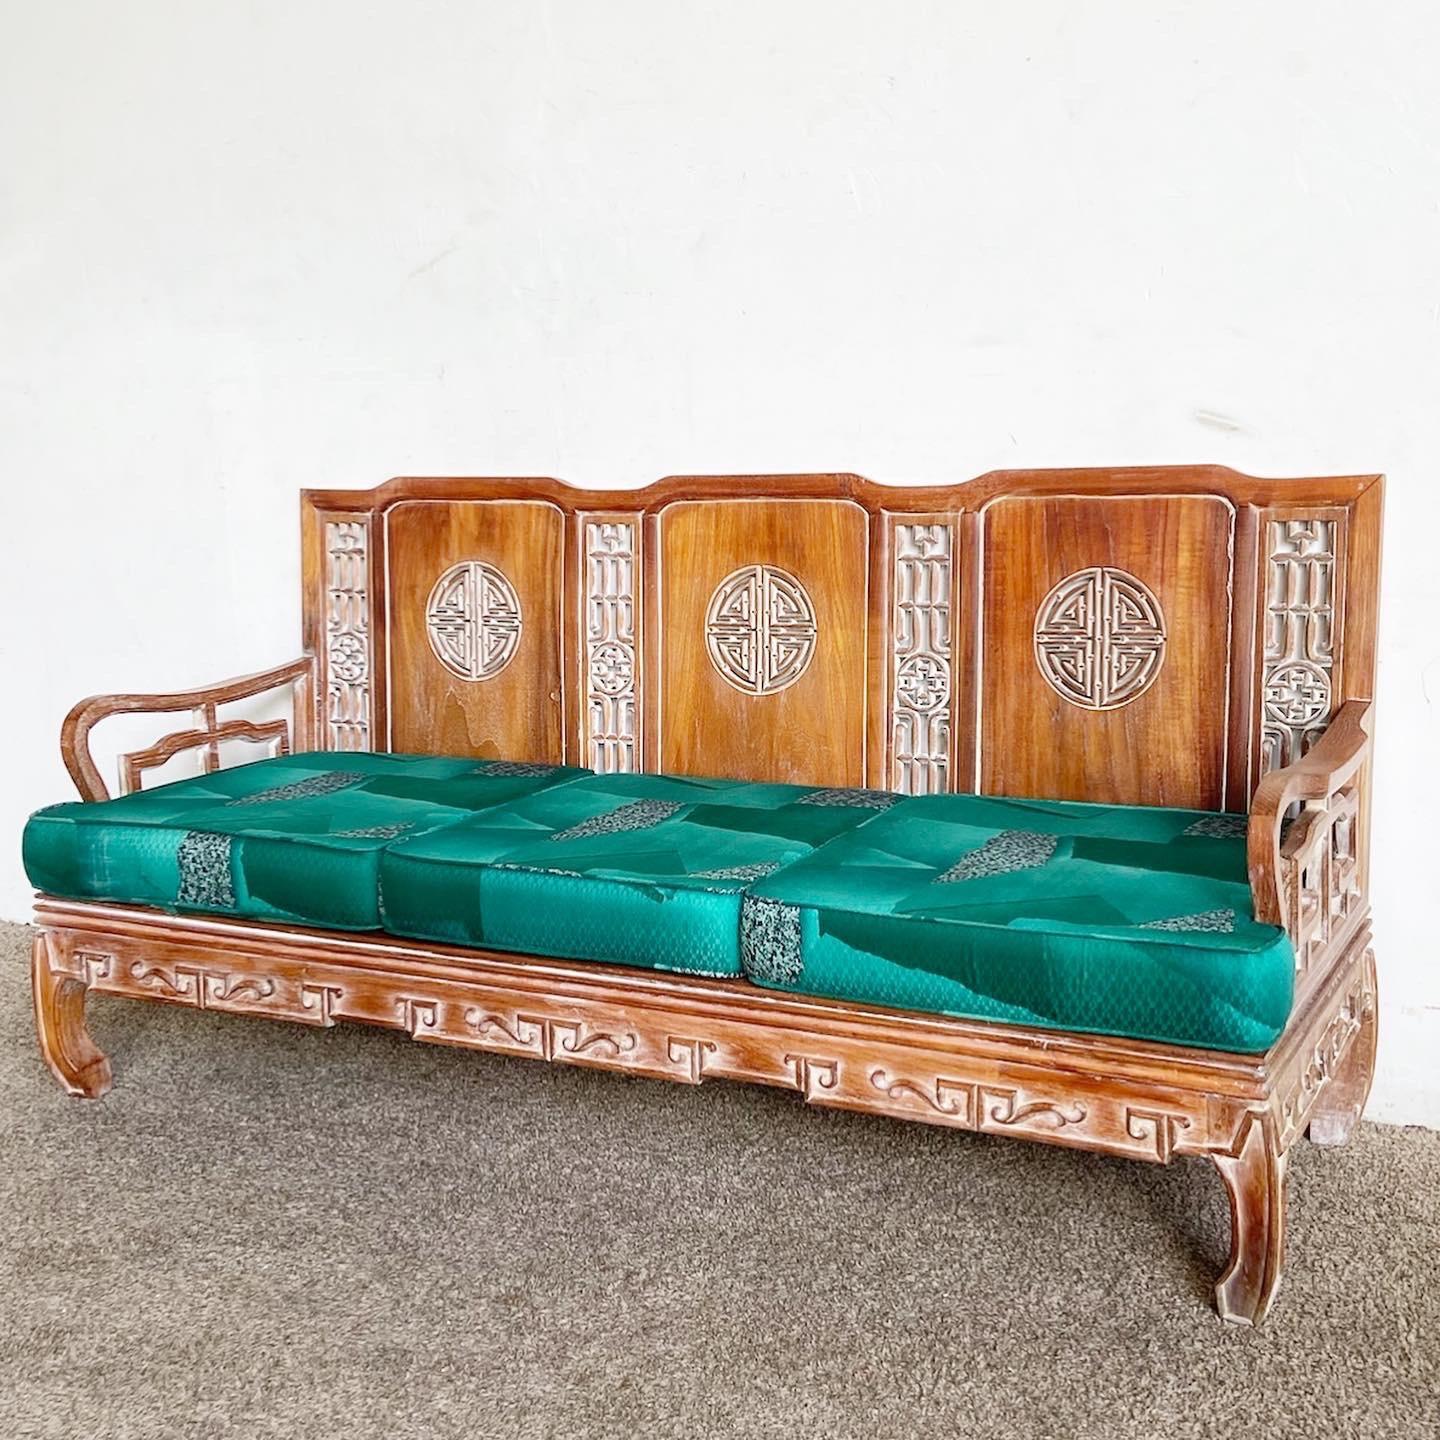 Découvrez l'art du design asiatique avec cet ensemble canapé et fauteuil en bois sculpté de style Ming. Les meubles présentent des sculptures complexes sur le dossier, les côtés et les accoudoirs, offrant à la fois un confort et une touche